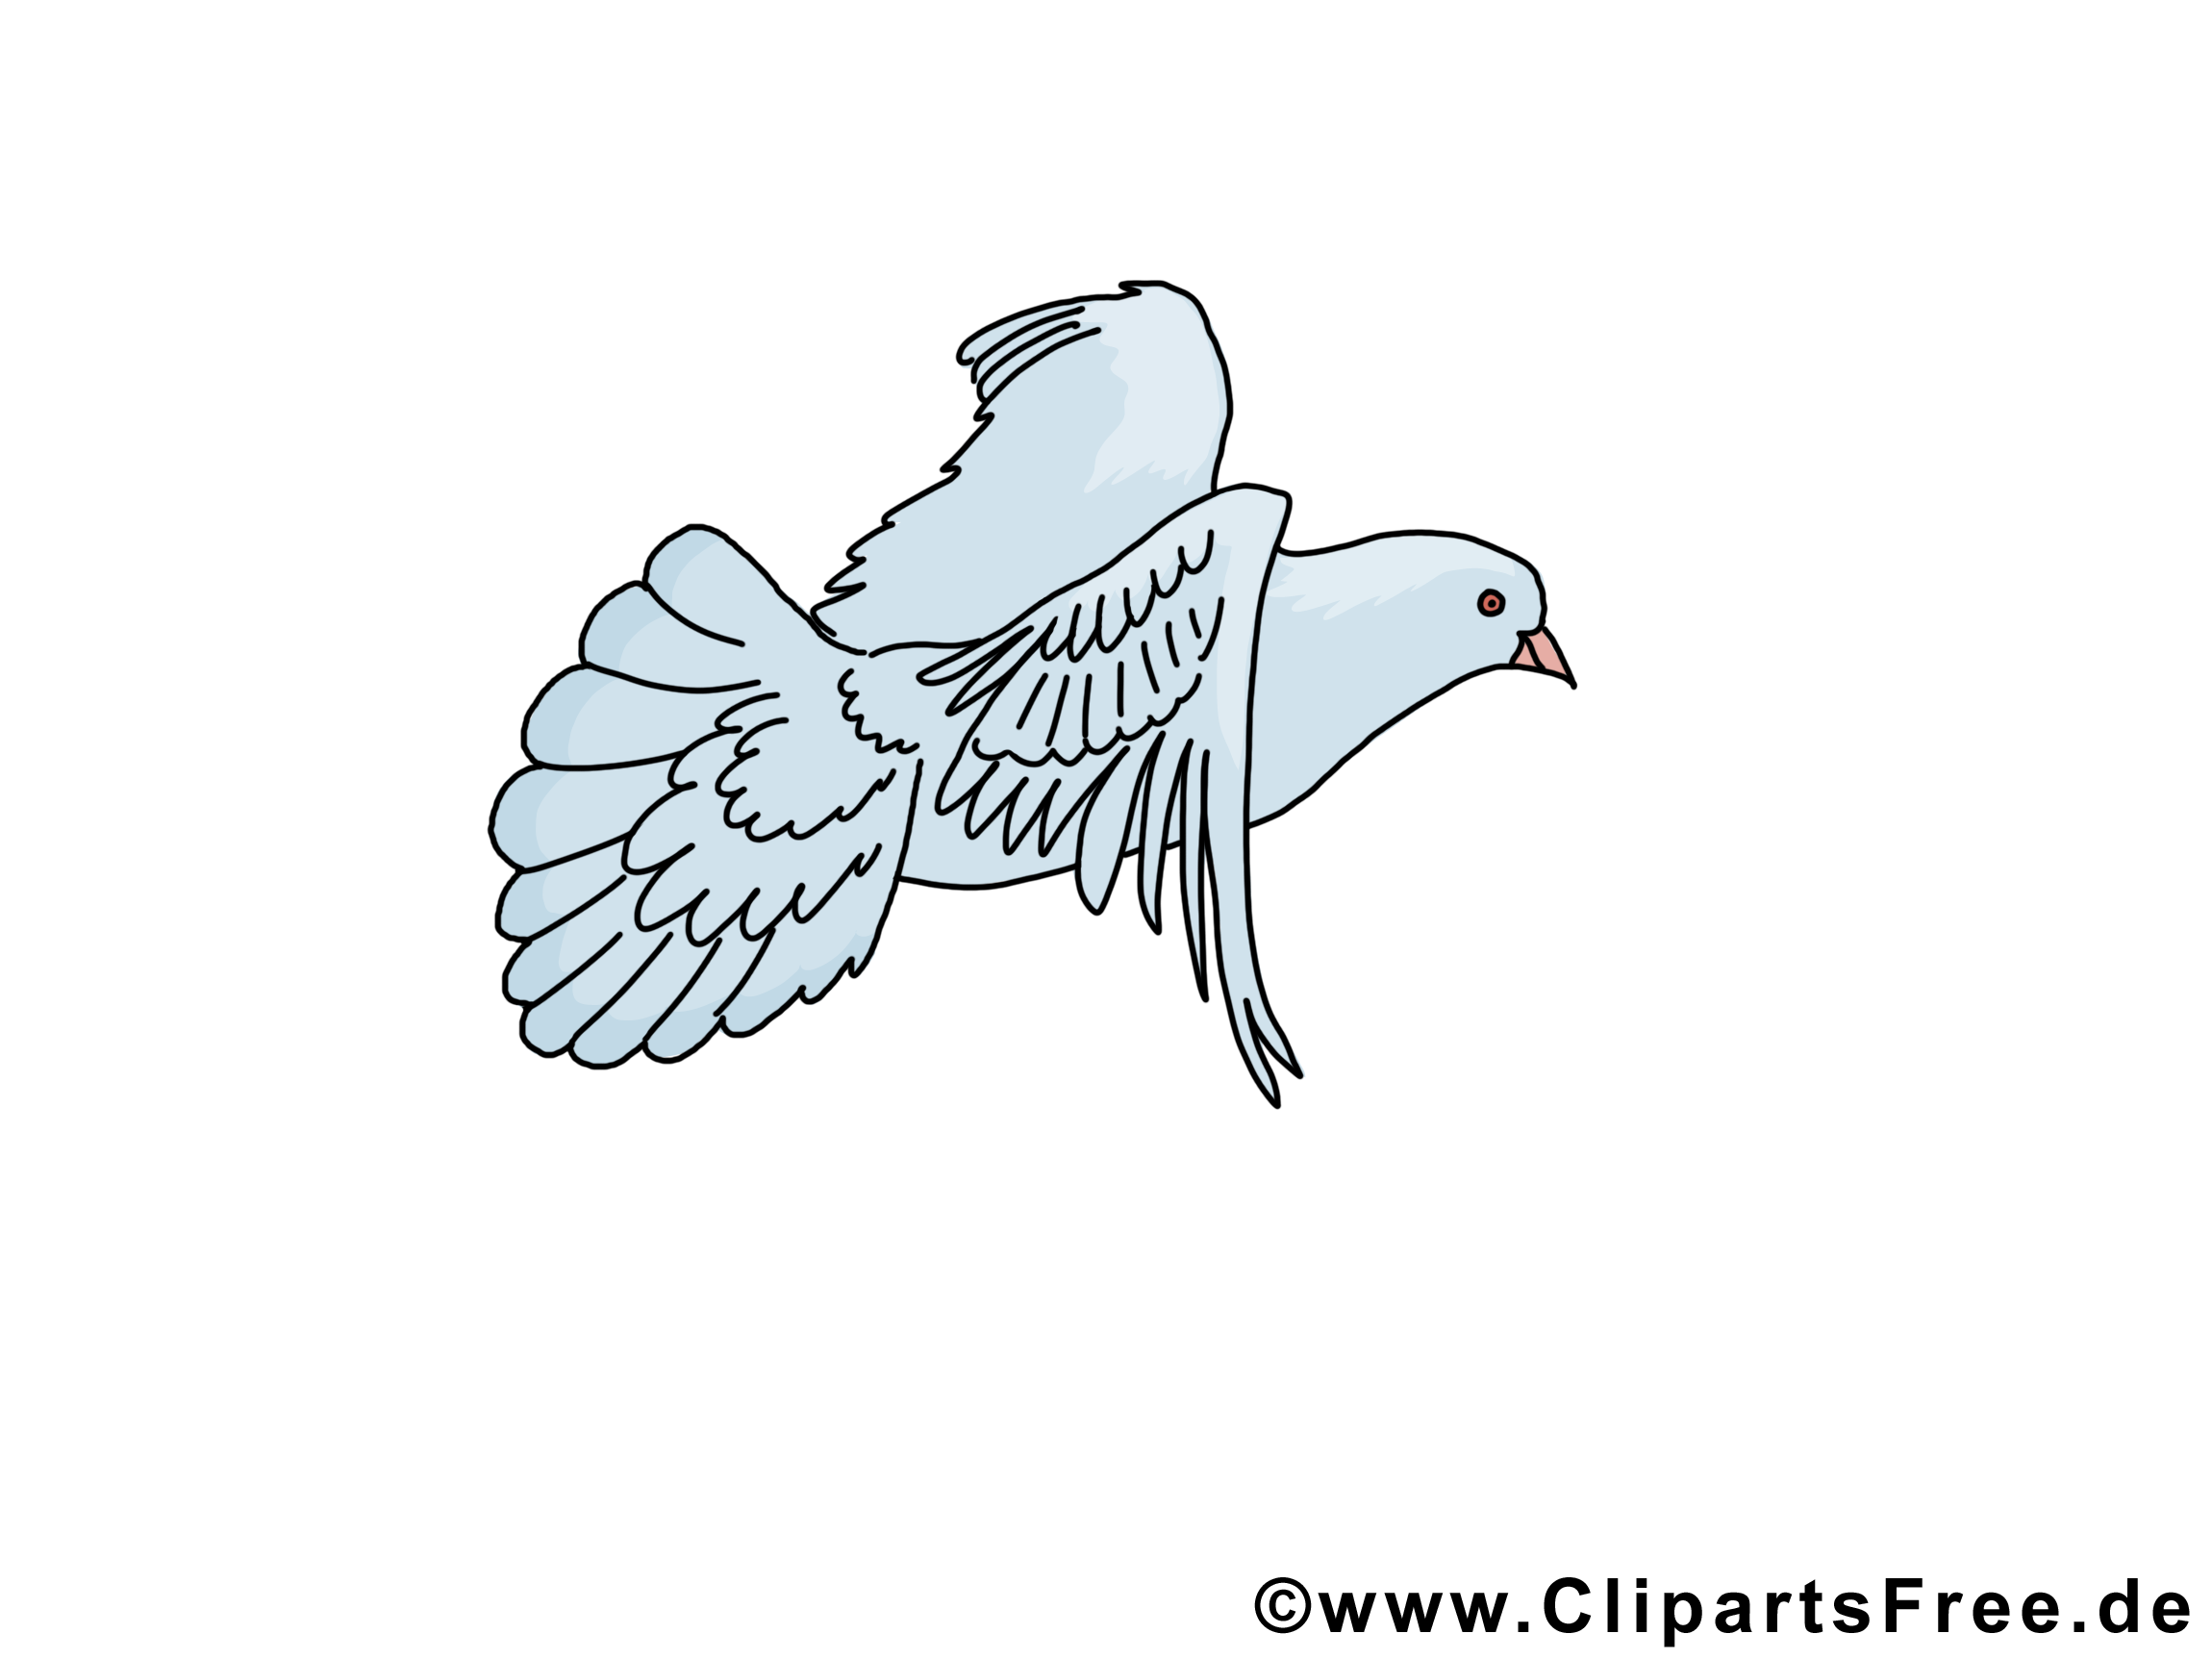 Pentecôte image gratuite – Pigeon clipart